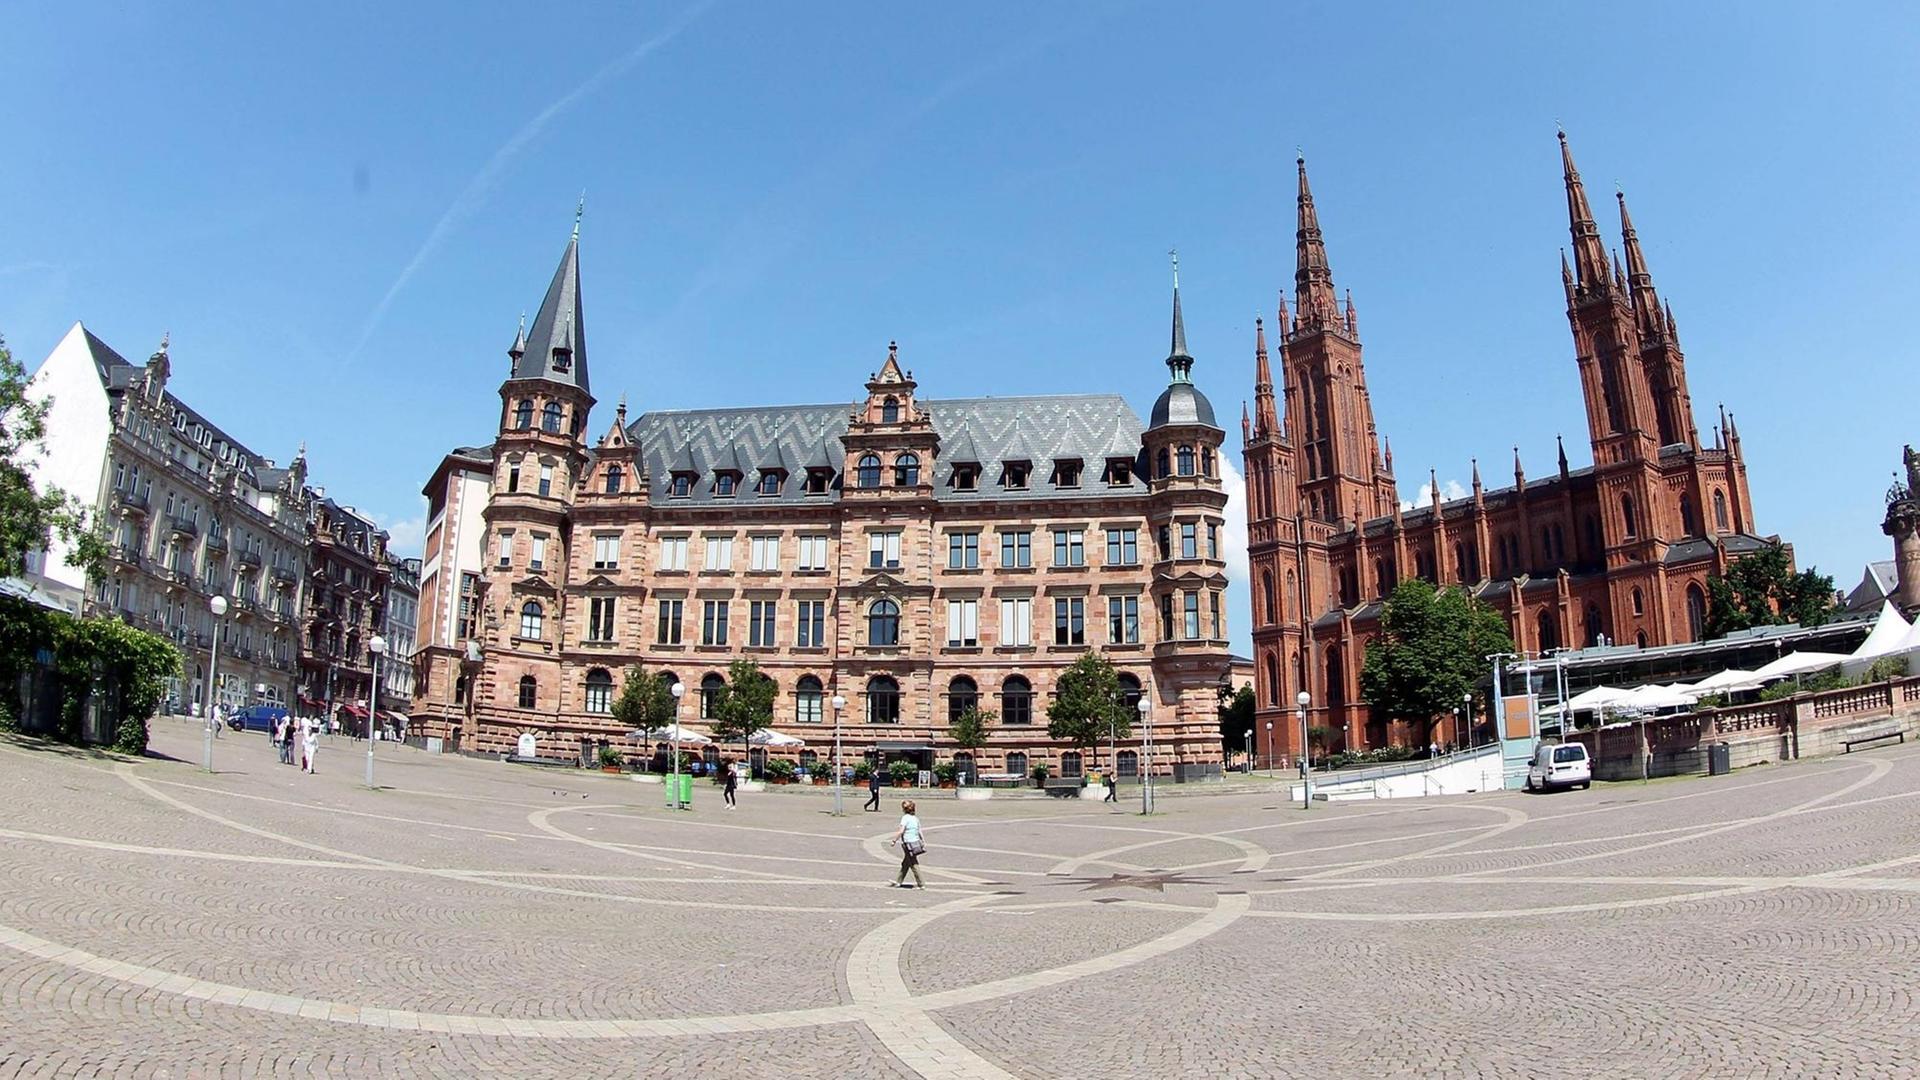 Wiesbaden: Neues Rathaus, Marktkirche, Marktplatz